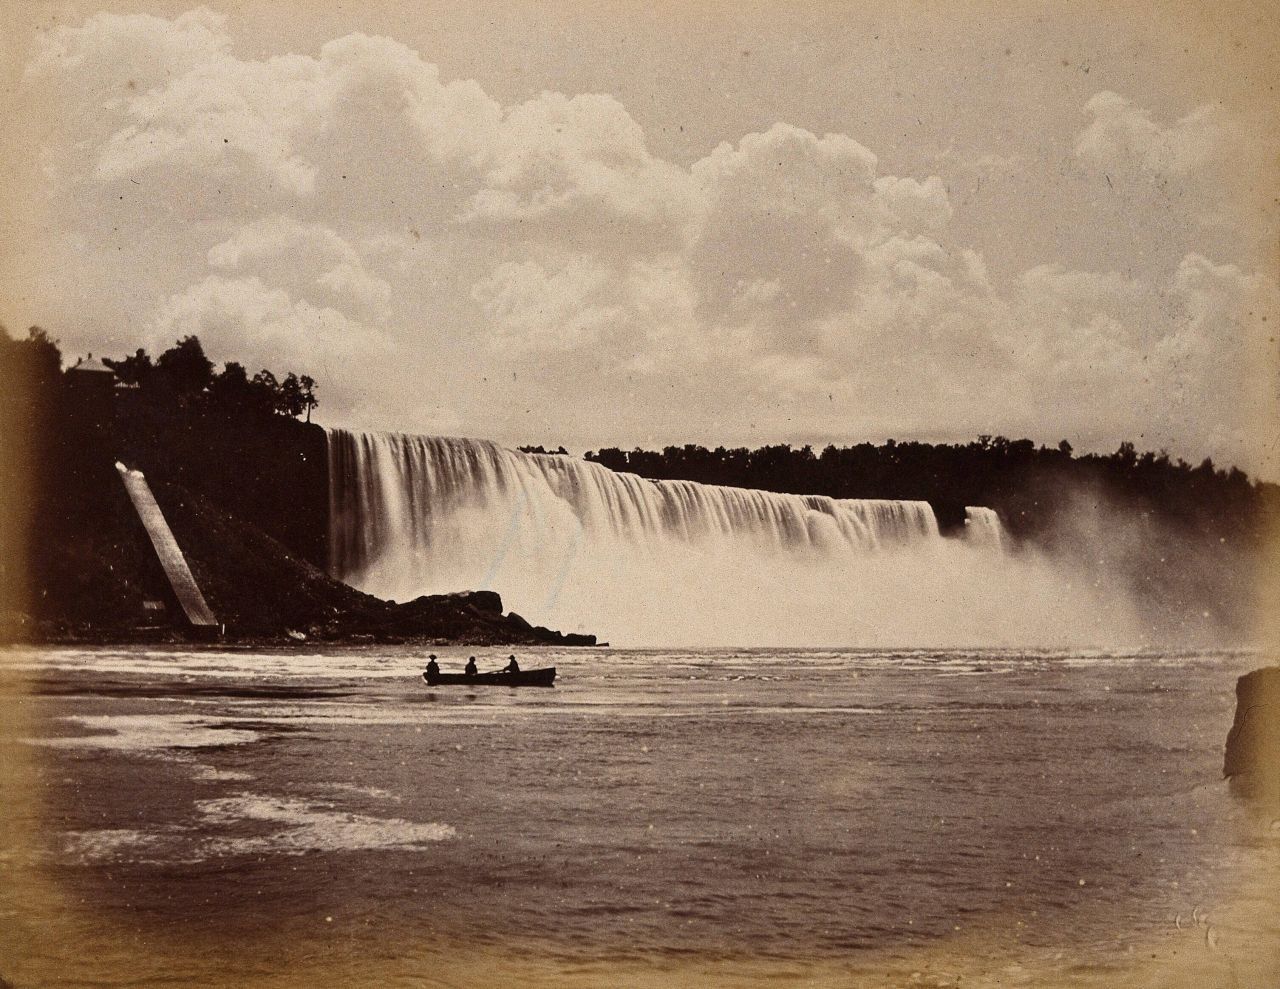 Dieses Bild entstand circa 1880. Schon damals galten die Niagarafälle als eine Sehenswürdigkeit.
